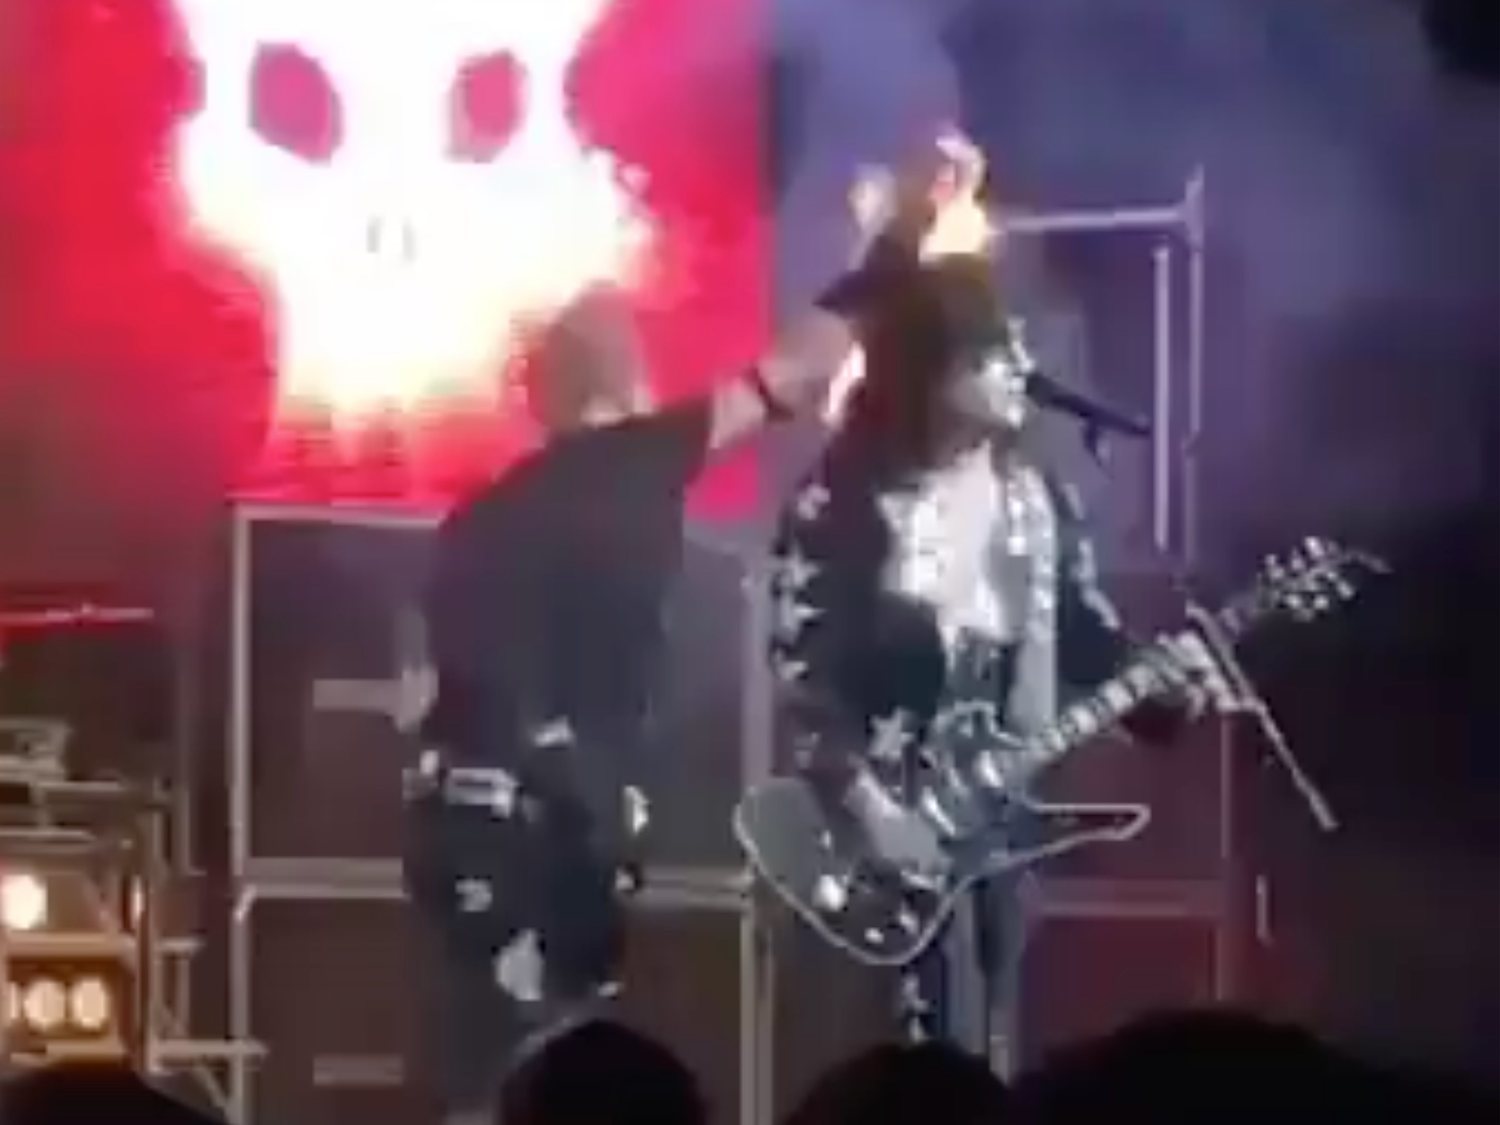 Un imitador de Kiss se quema por accidente y sigue actuando mientras arde ante el público